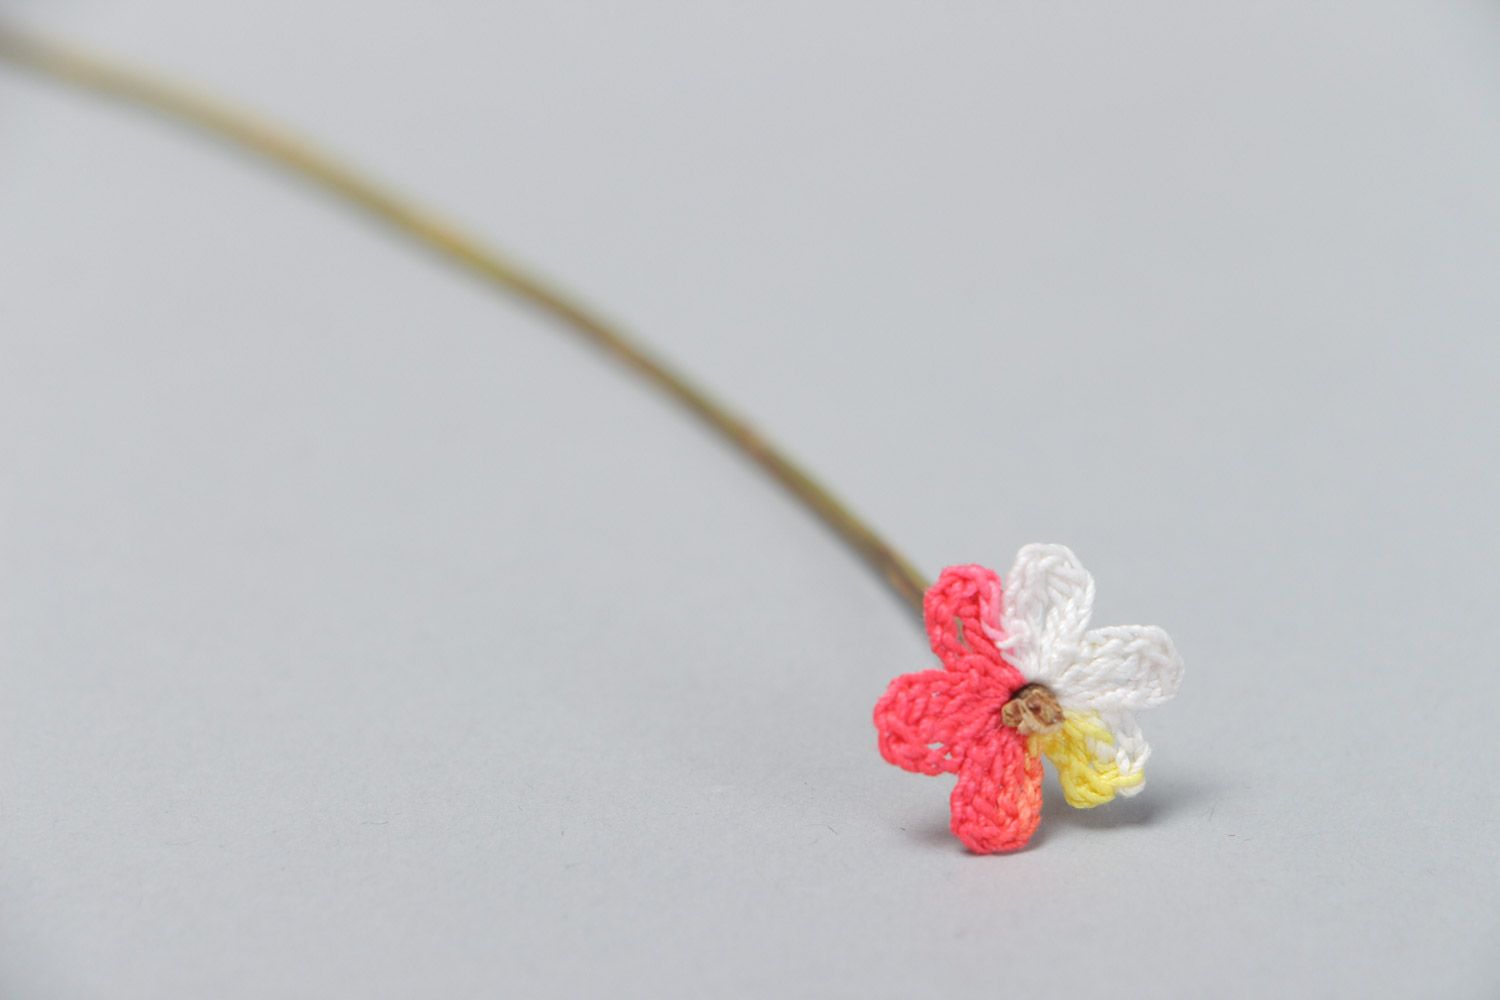 Цветок вязаный крючком декоративный полевой из хлопчатобумажных ниток хэнд мэйд фото 3